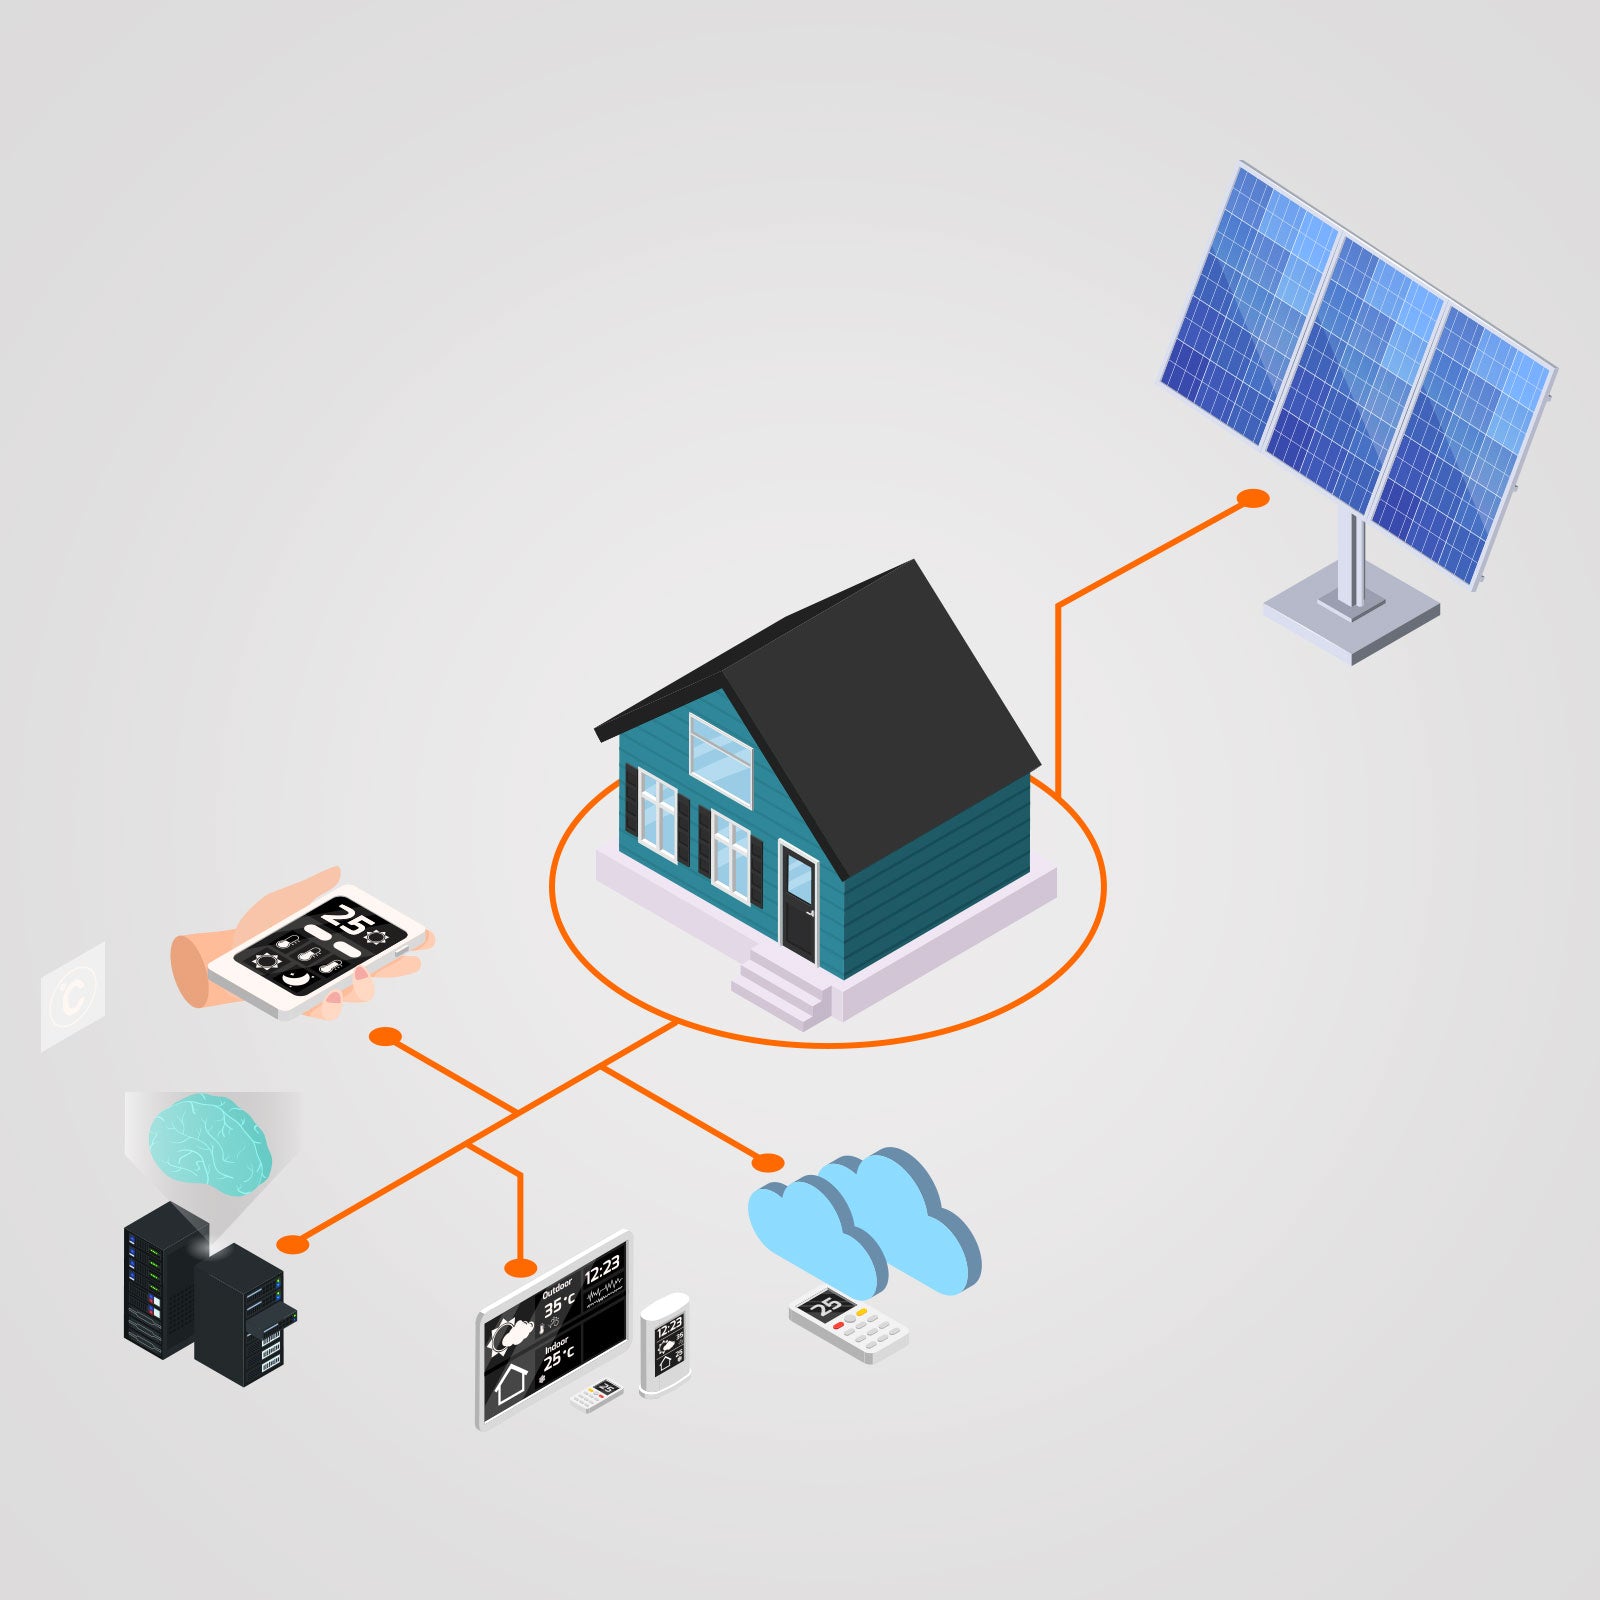 600 W 220 V Solarnetz-VDE-Mikro-Wechselrichter – PowMr